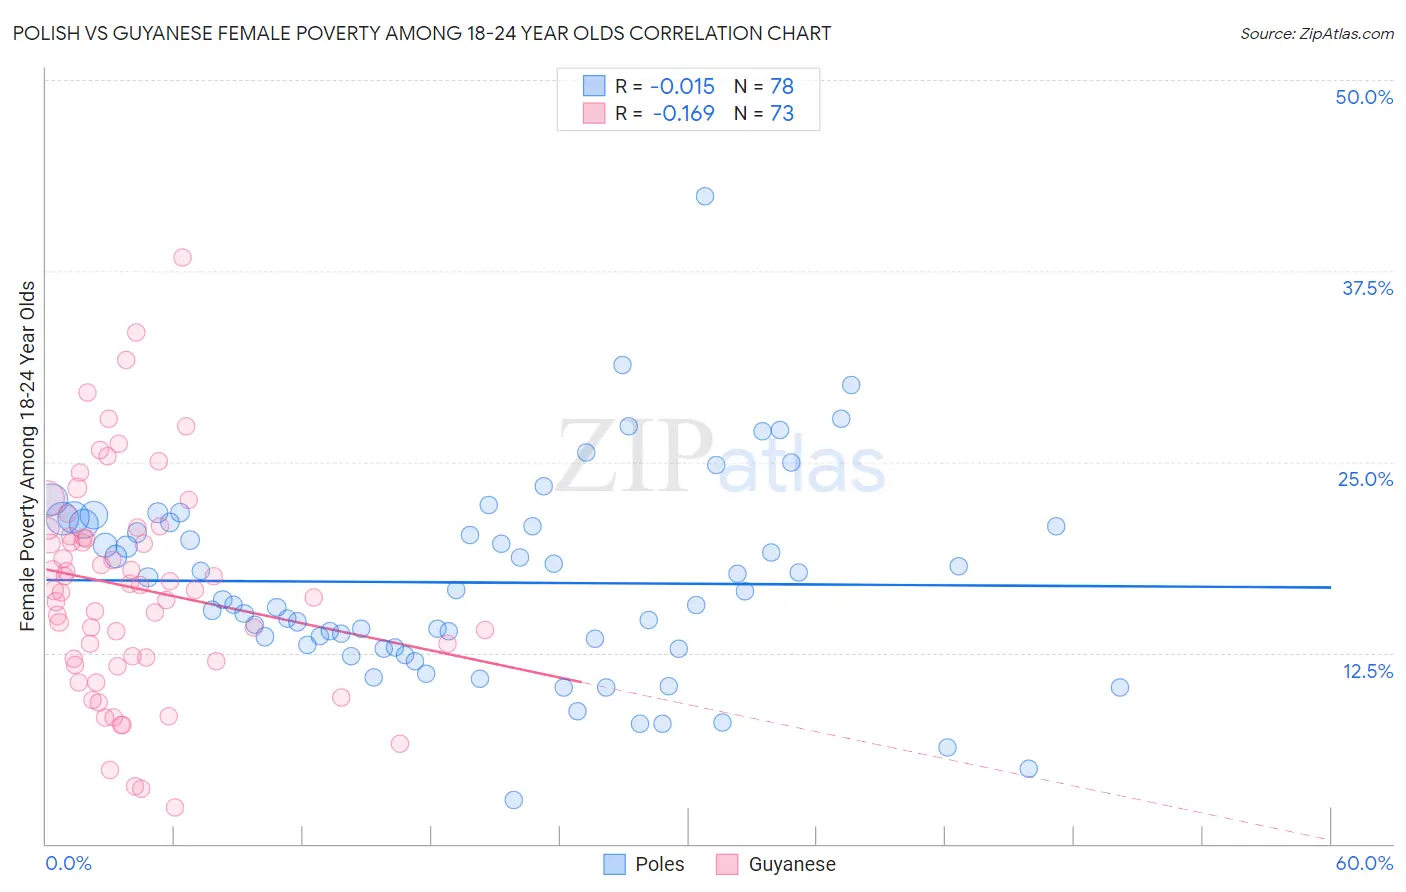 Polish vs Guyanese Female Poverty Among 18-24 Year Olds